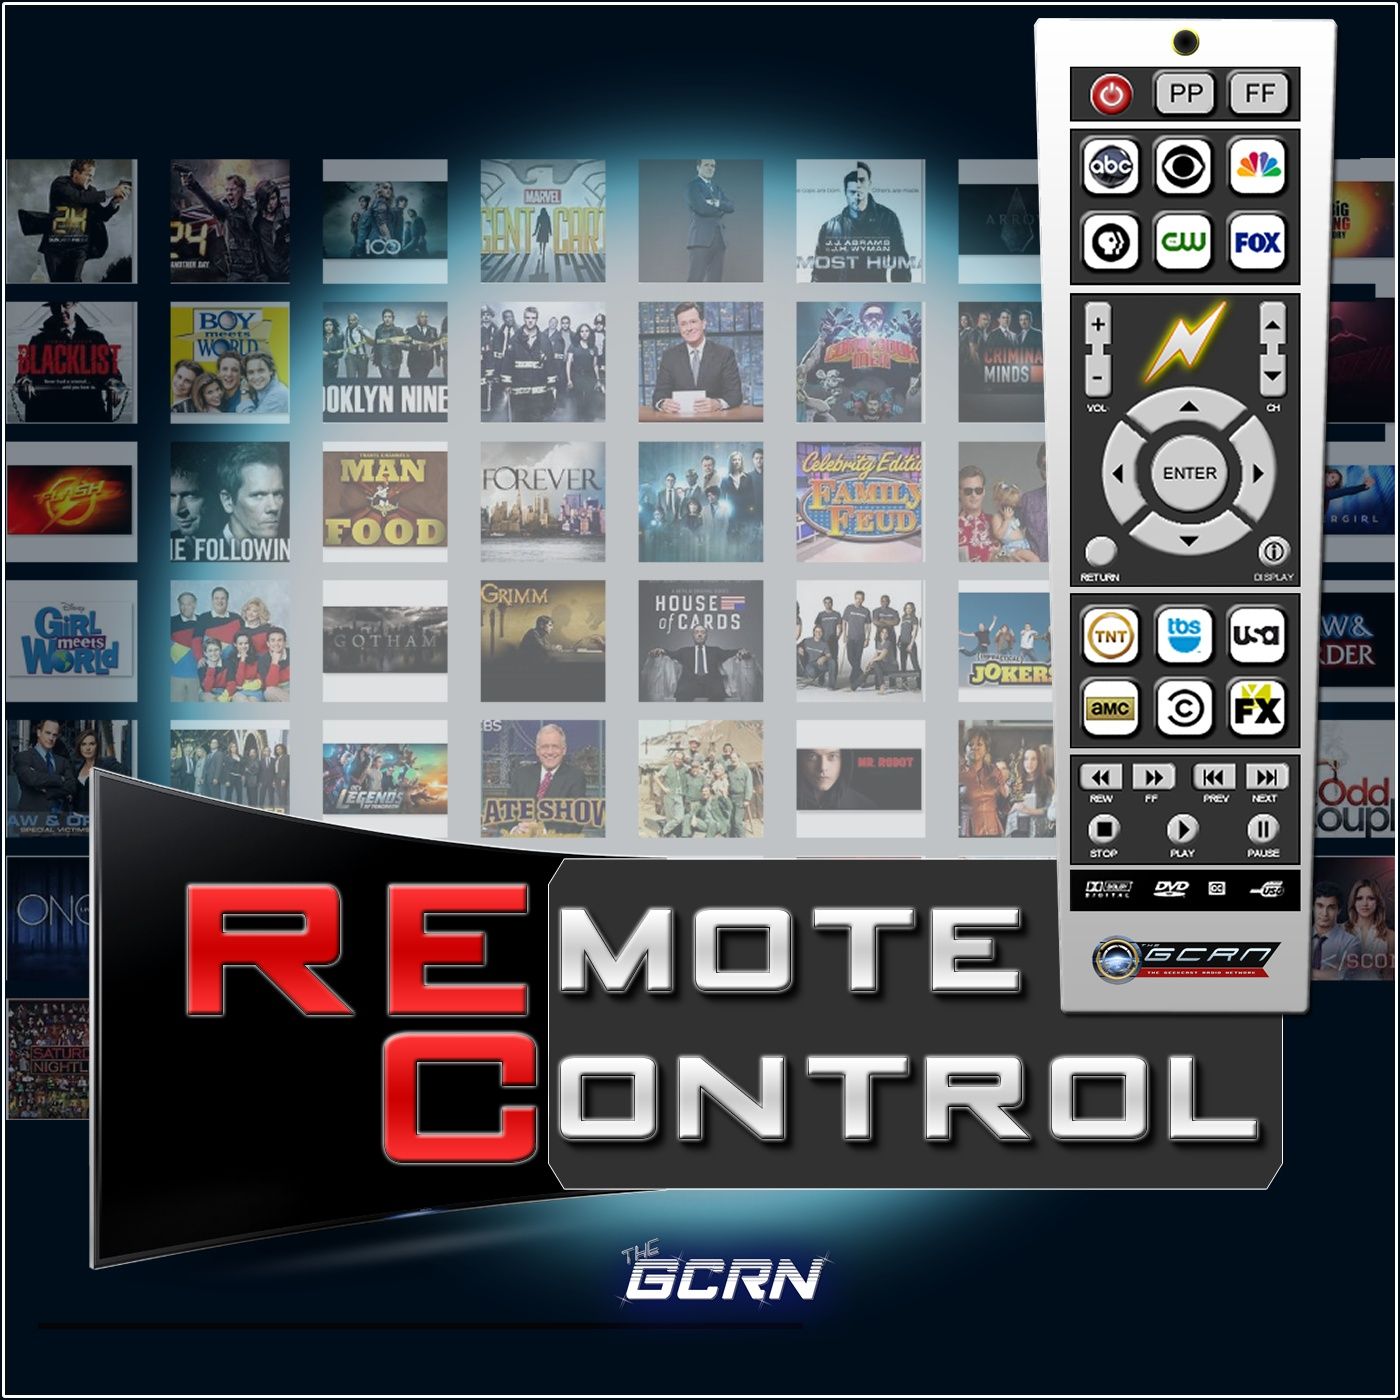 Remote Control – Pilot Premiere – Forever